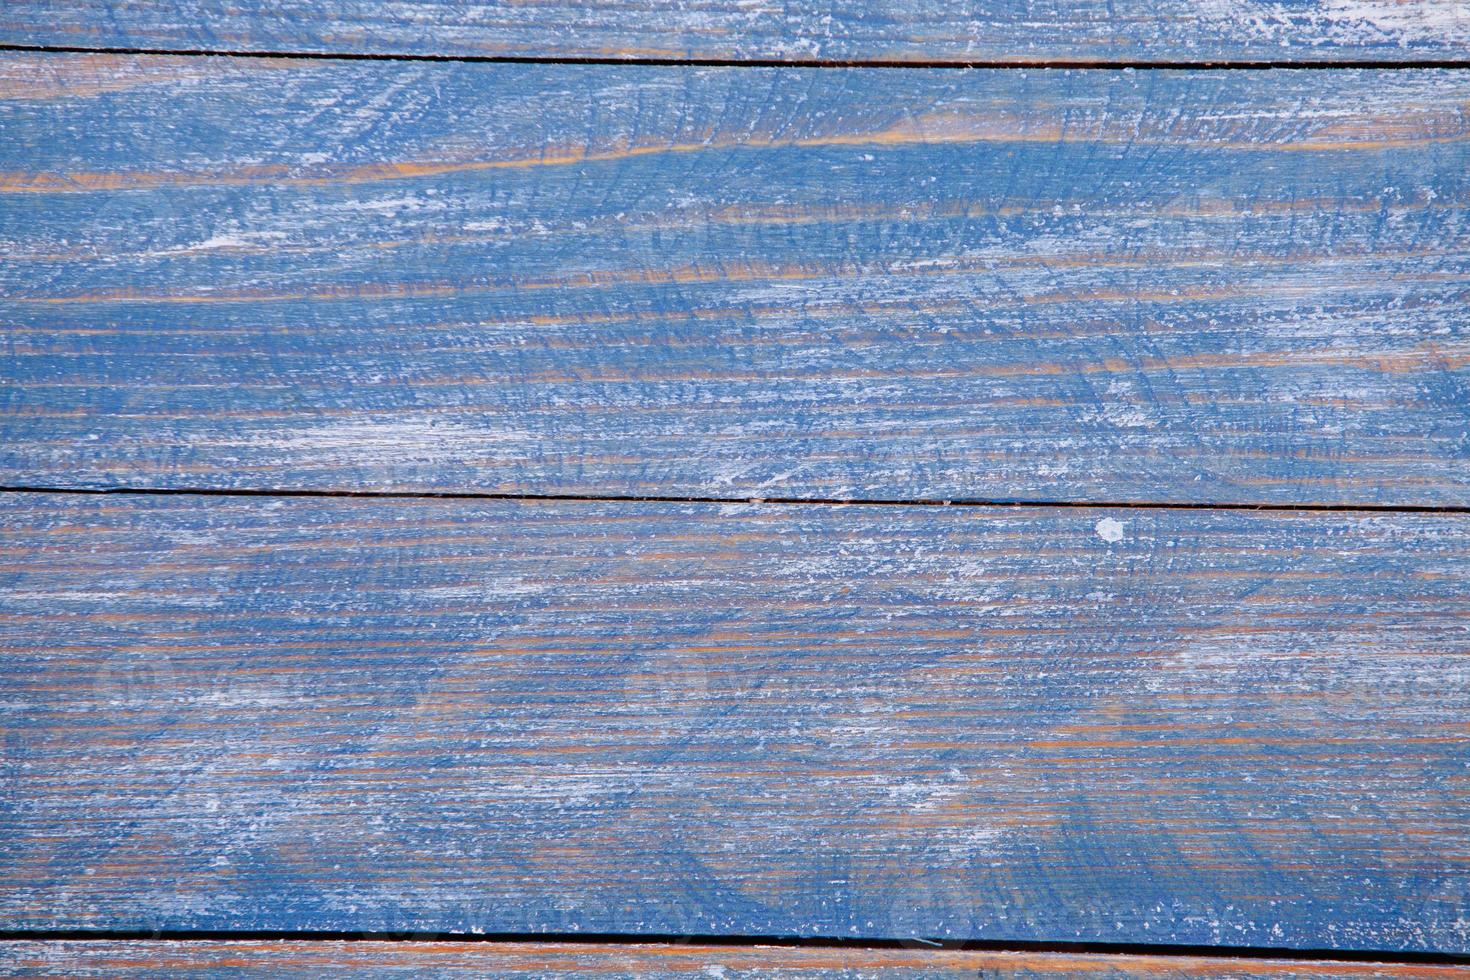 planche de bois peinte pour la conception ou le texte. abstraction du bois coloré. photo